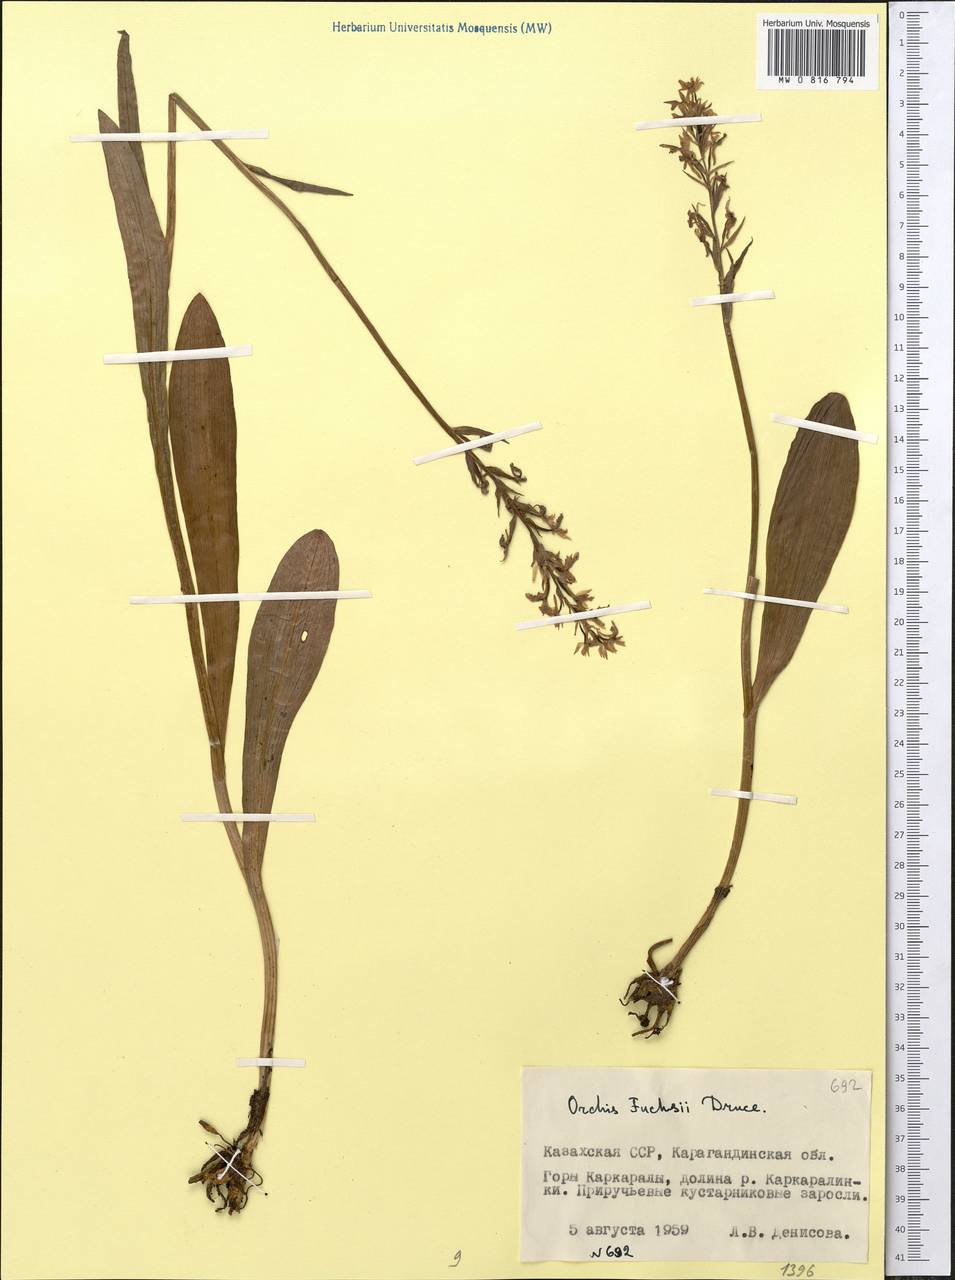 Dactylorhiza maculata subsp. fuchsii (Druce) Hyl., Middle Asia, Muyunkumy, Balkhash & Betpak-Dala (M9) (Kazakhstan)